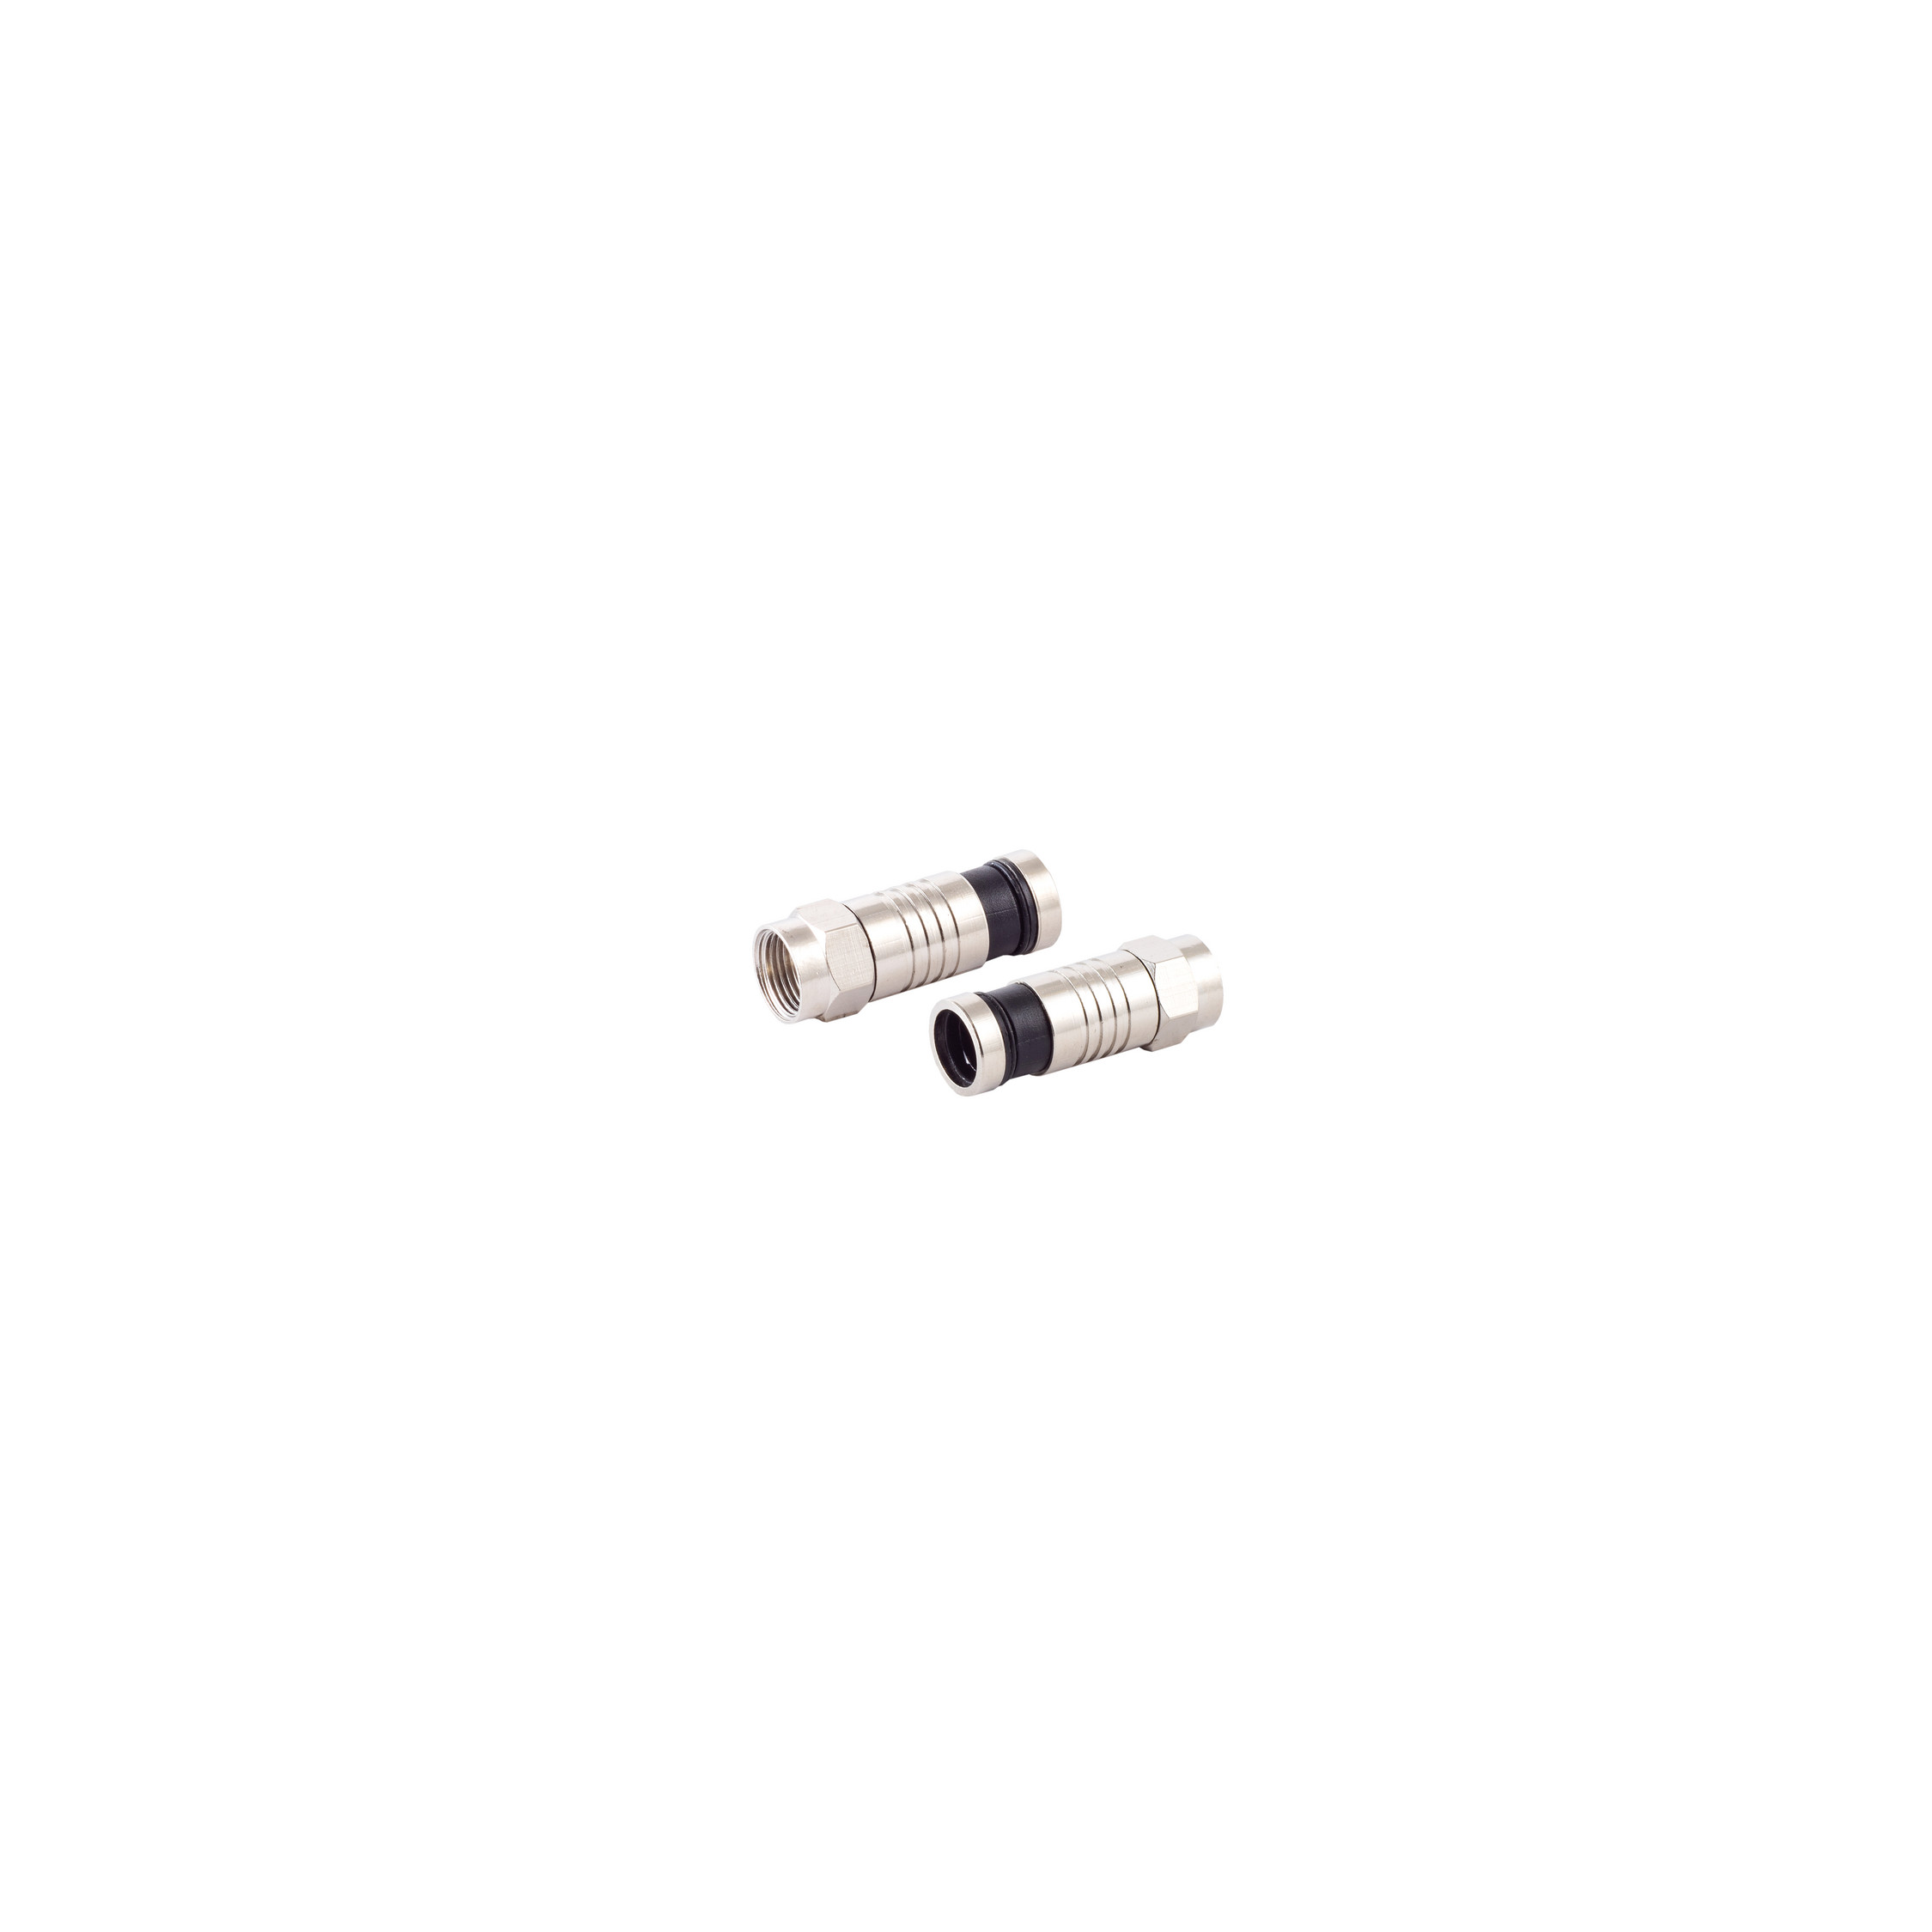 S/CONN MAXIMUM CONNECTIVITY für Stecker SAT & 7,2mm Adapter Kabel F-Kompressionsstecker